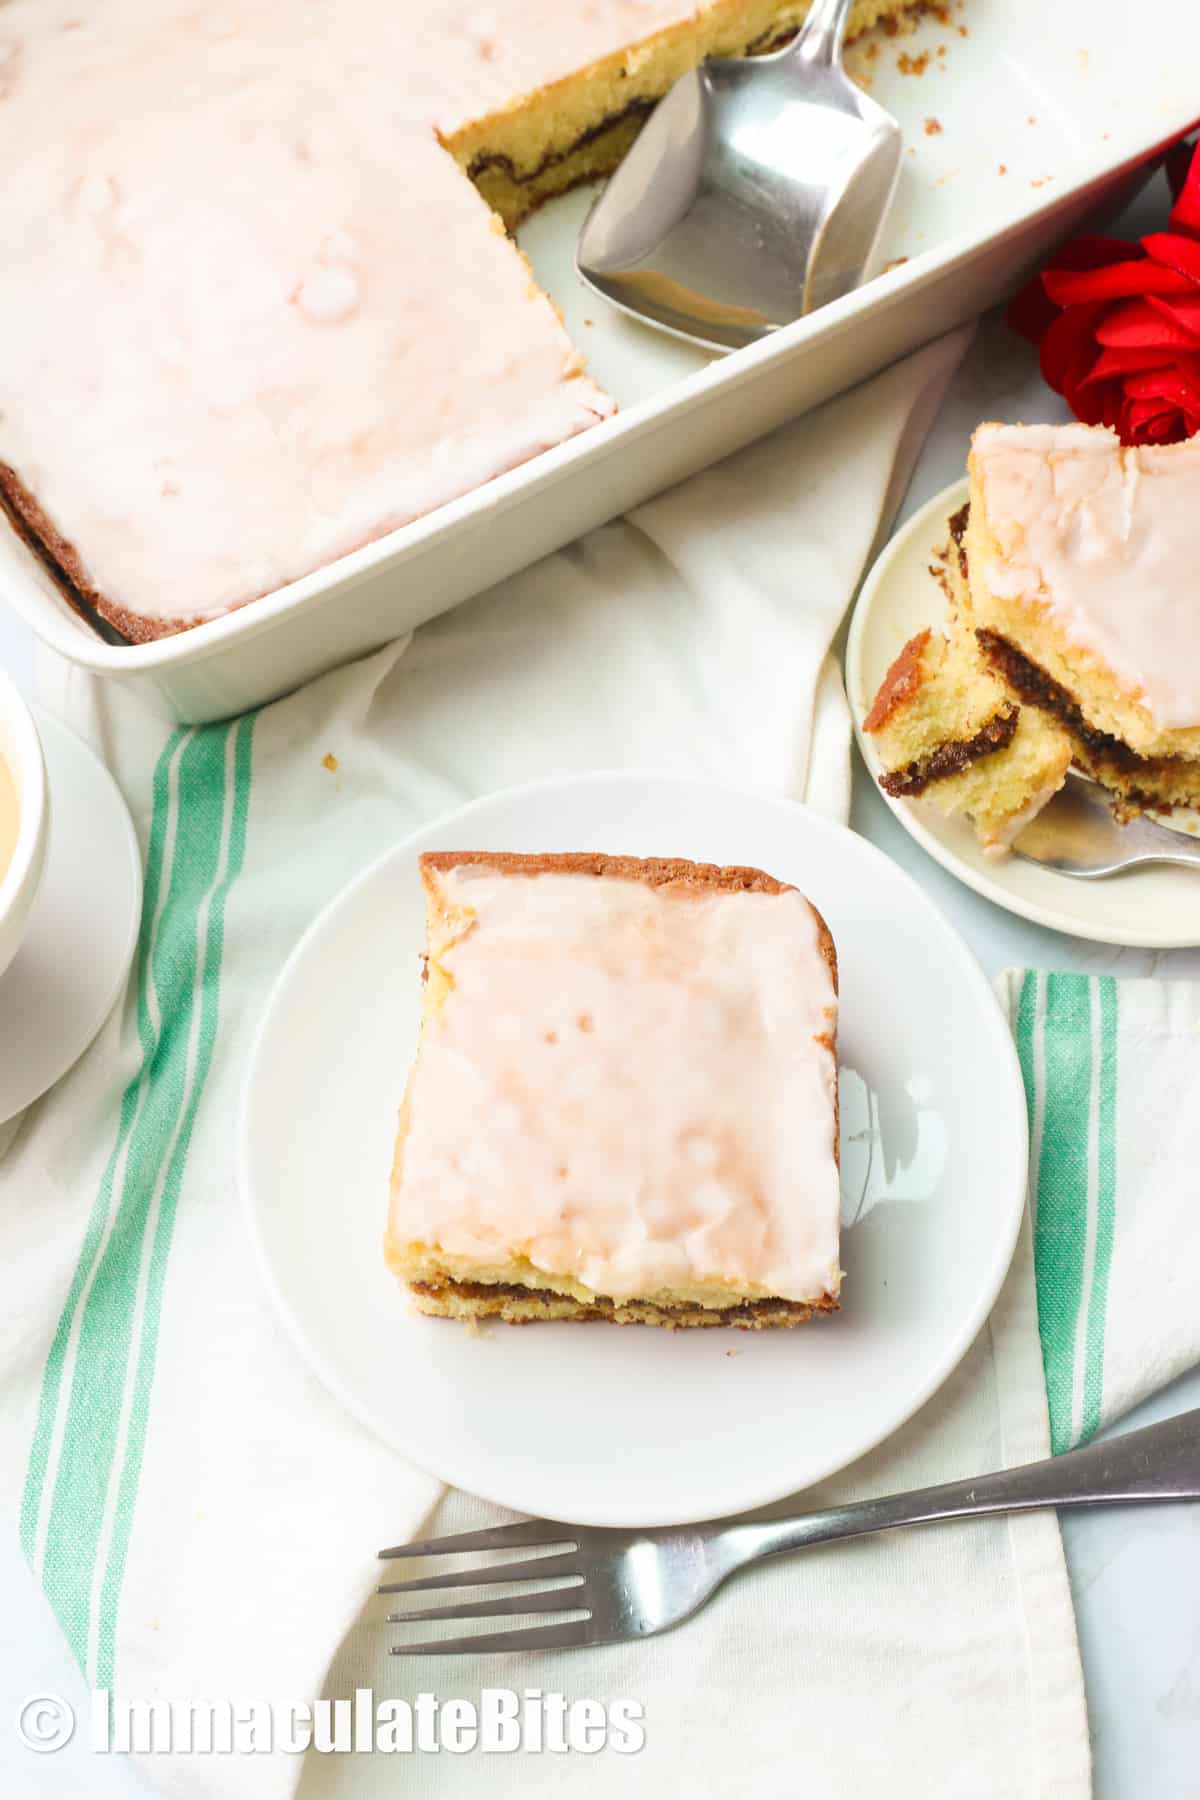 Enjoy a decadent slice of honey bun cake